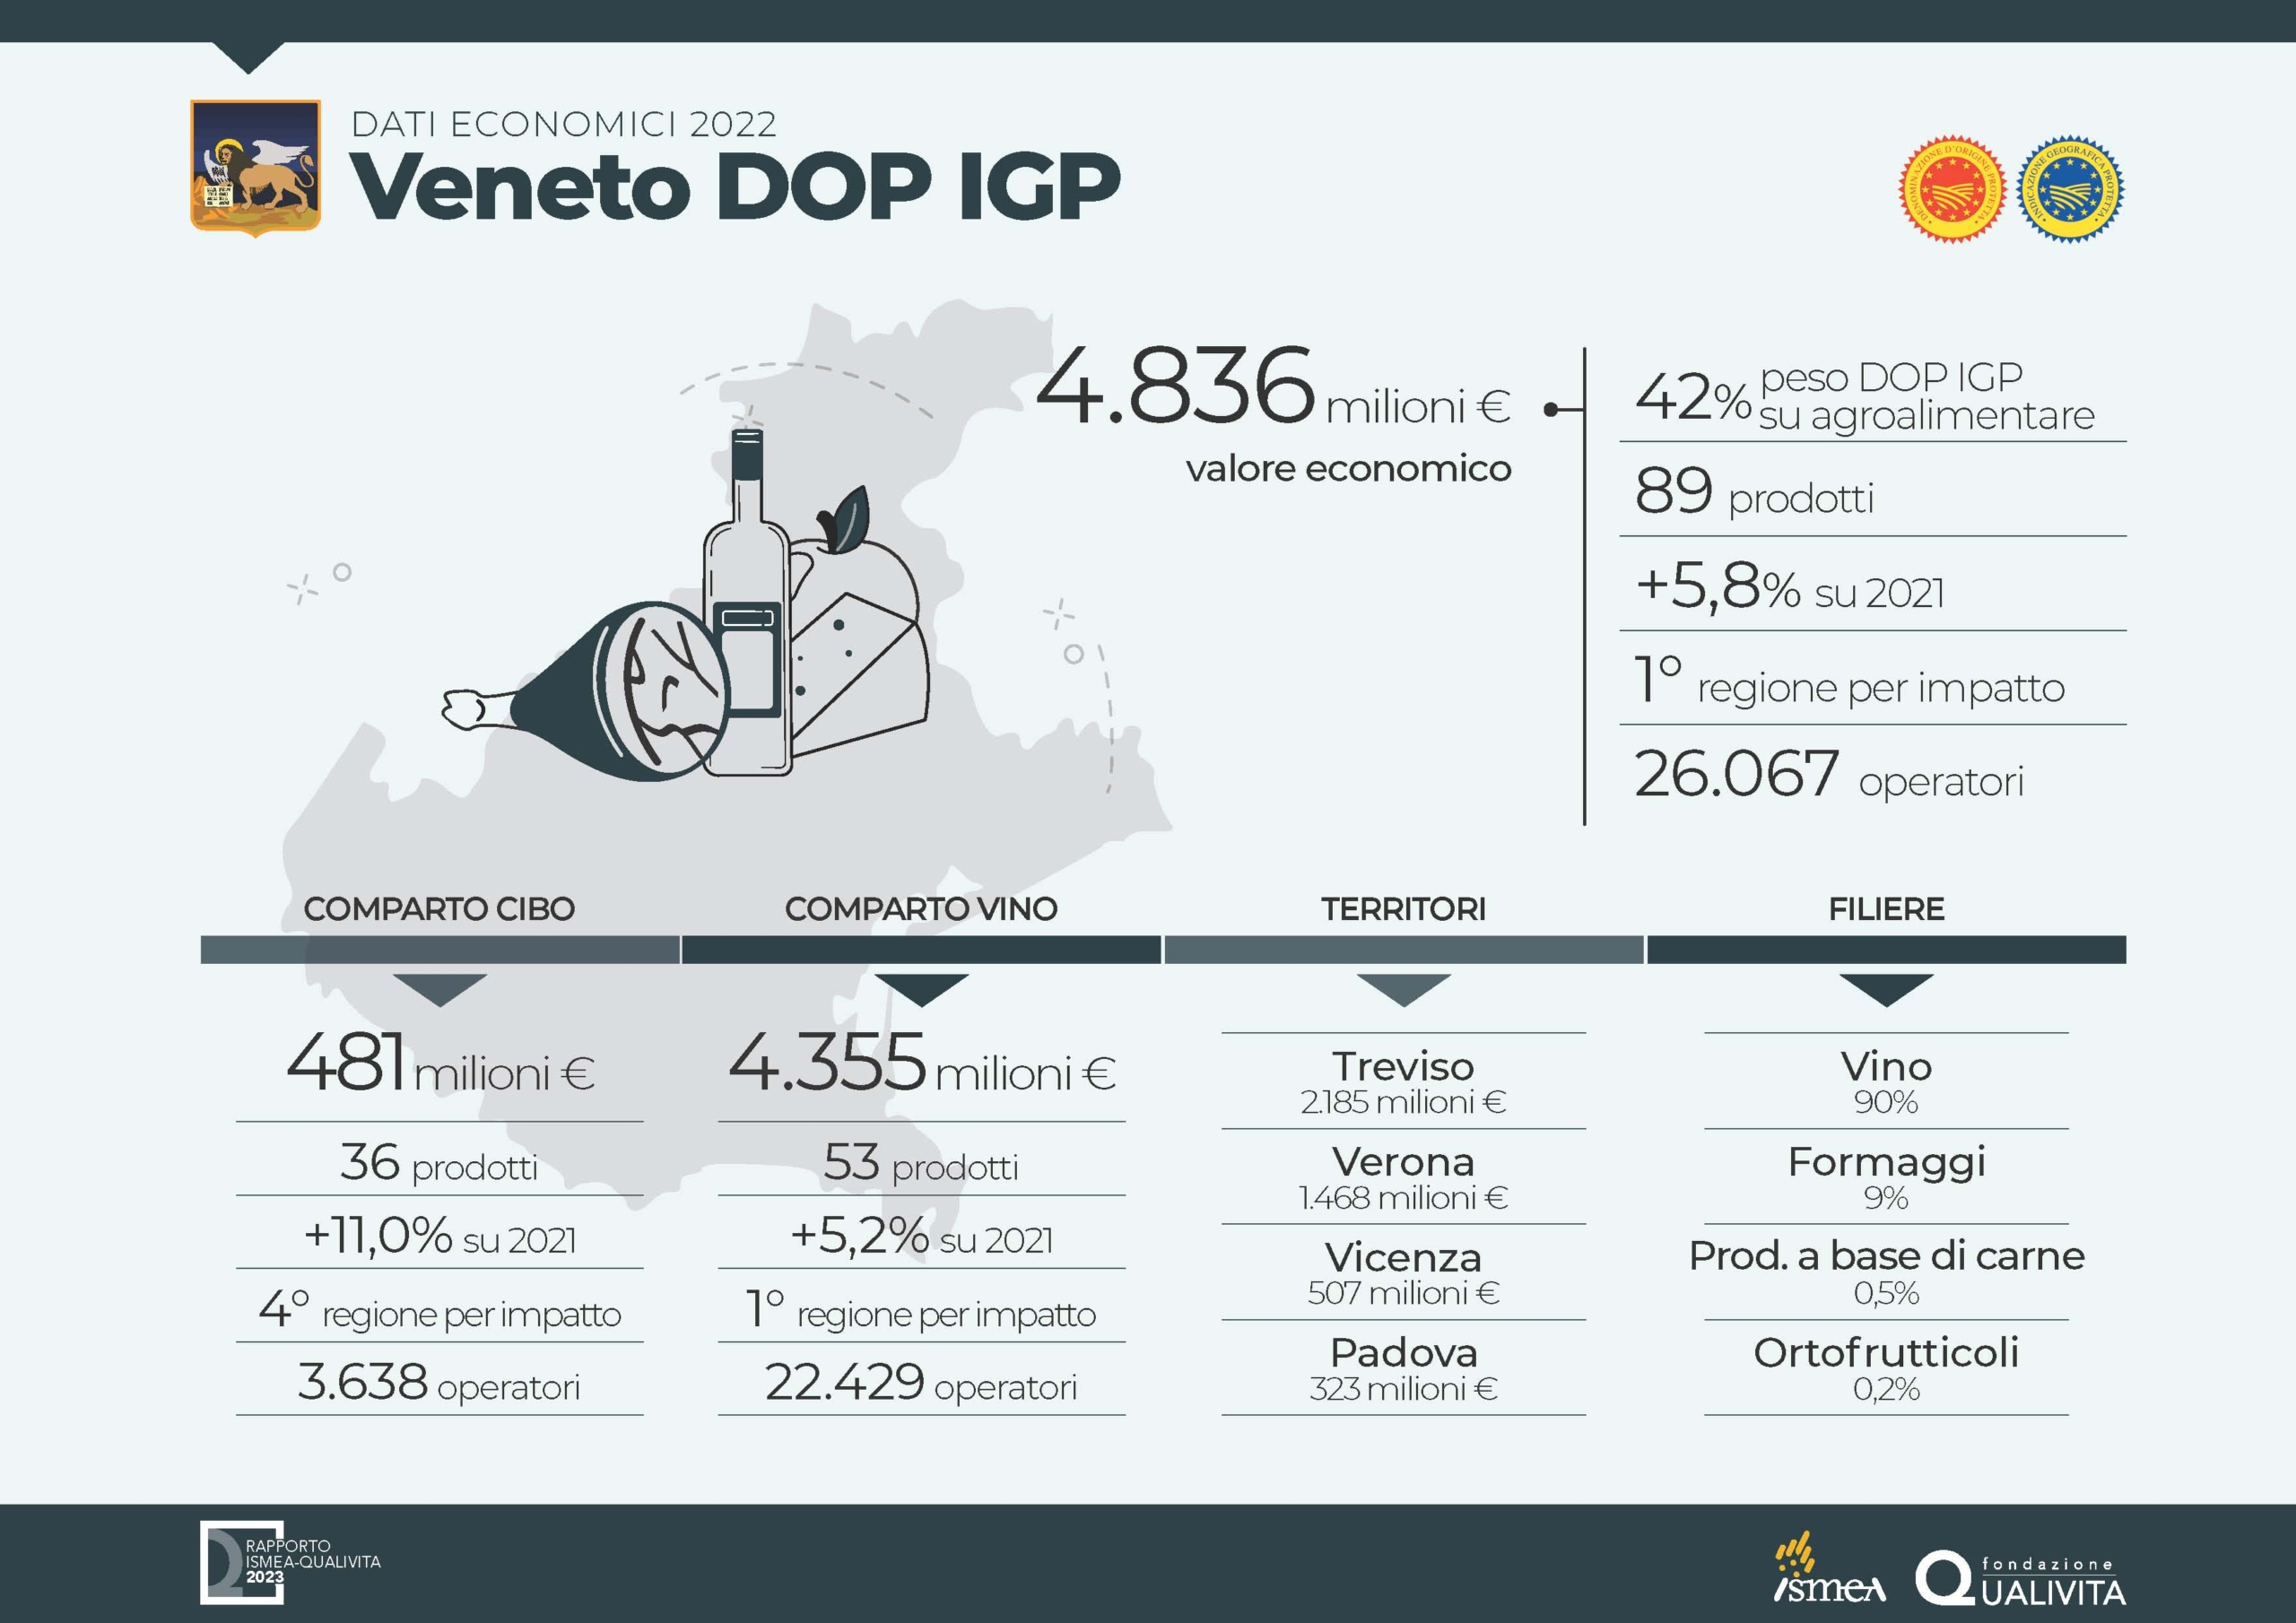 Veneto conferma e certezza 2023 per il DOP Economy dell'Italia, immagine da sito